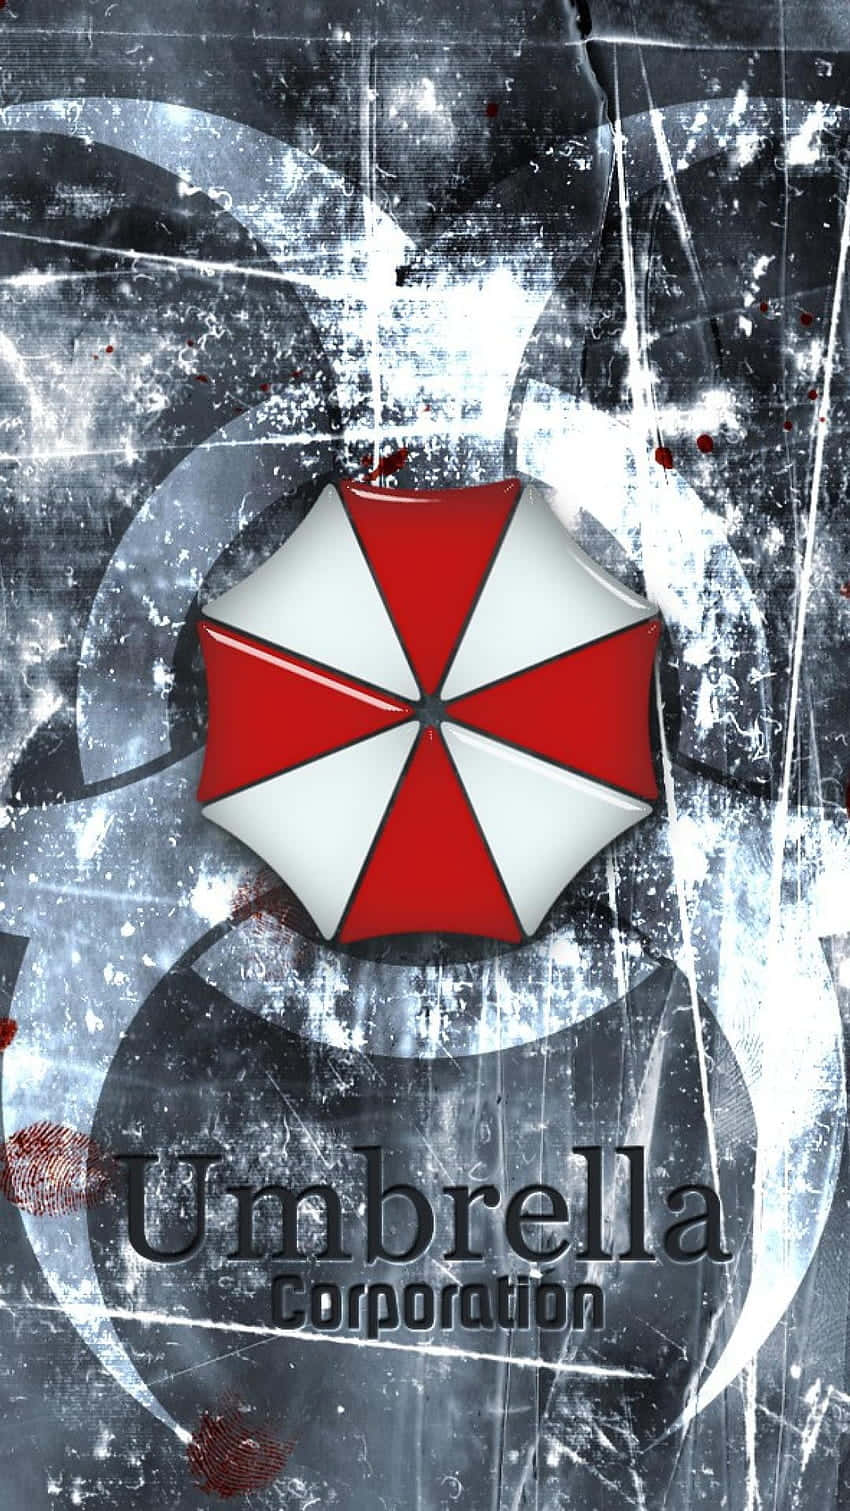 Umbrella Corporation Wallpaper, The Umbrella Corporation is…